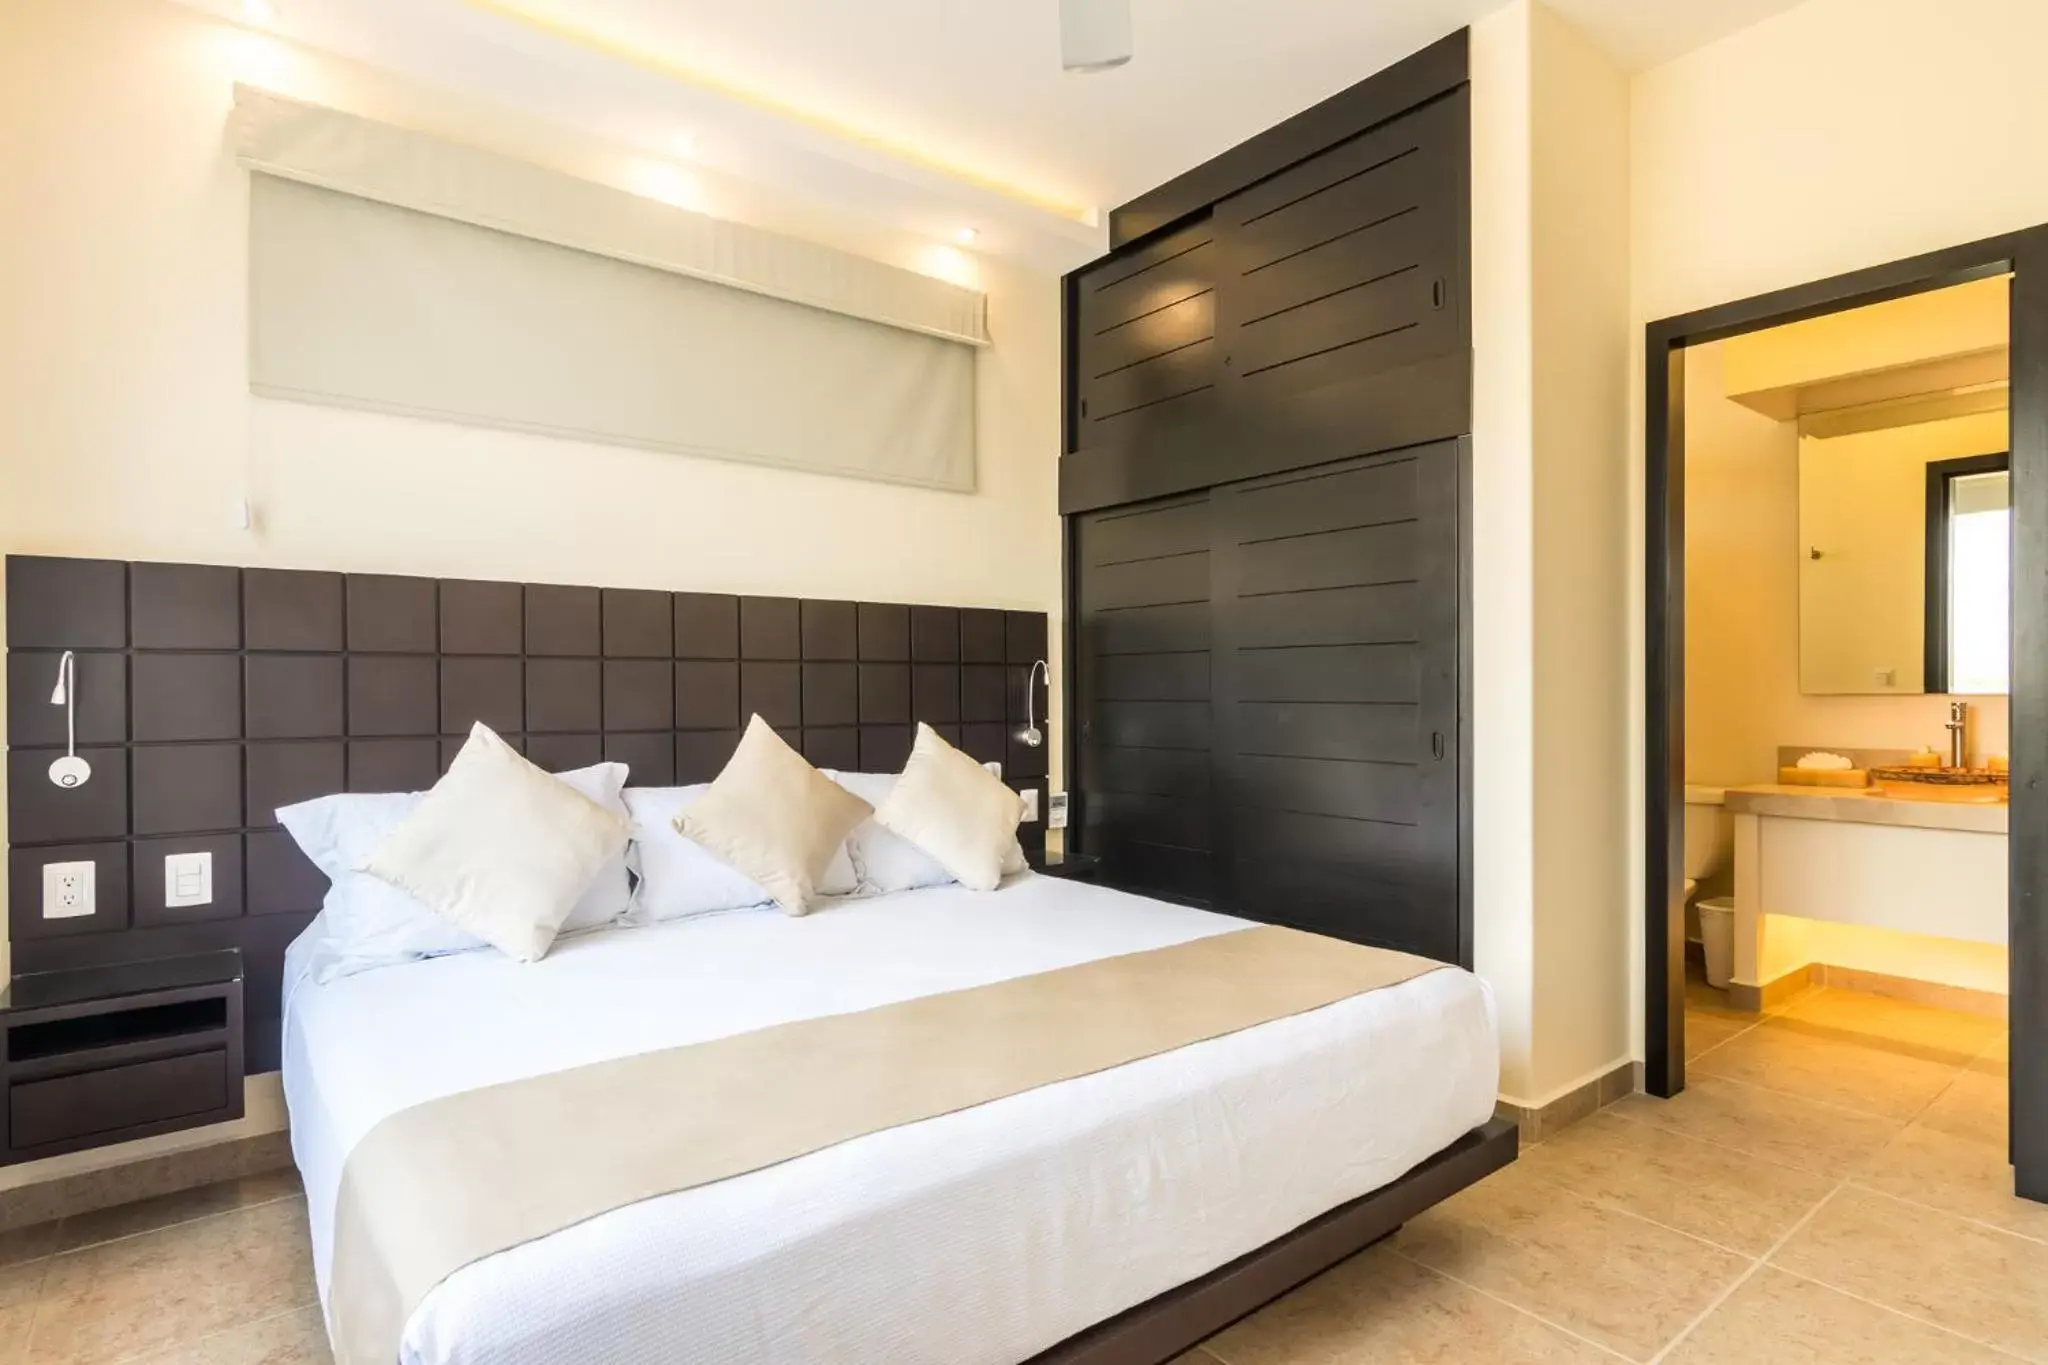 Bed, Room Photo in Vivo Resorts